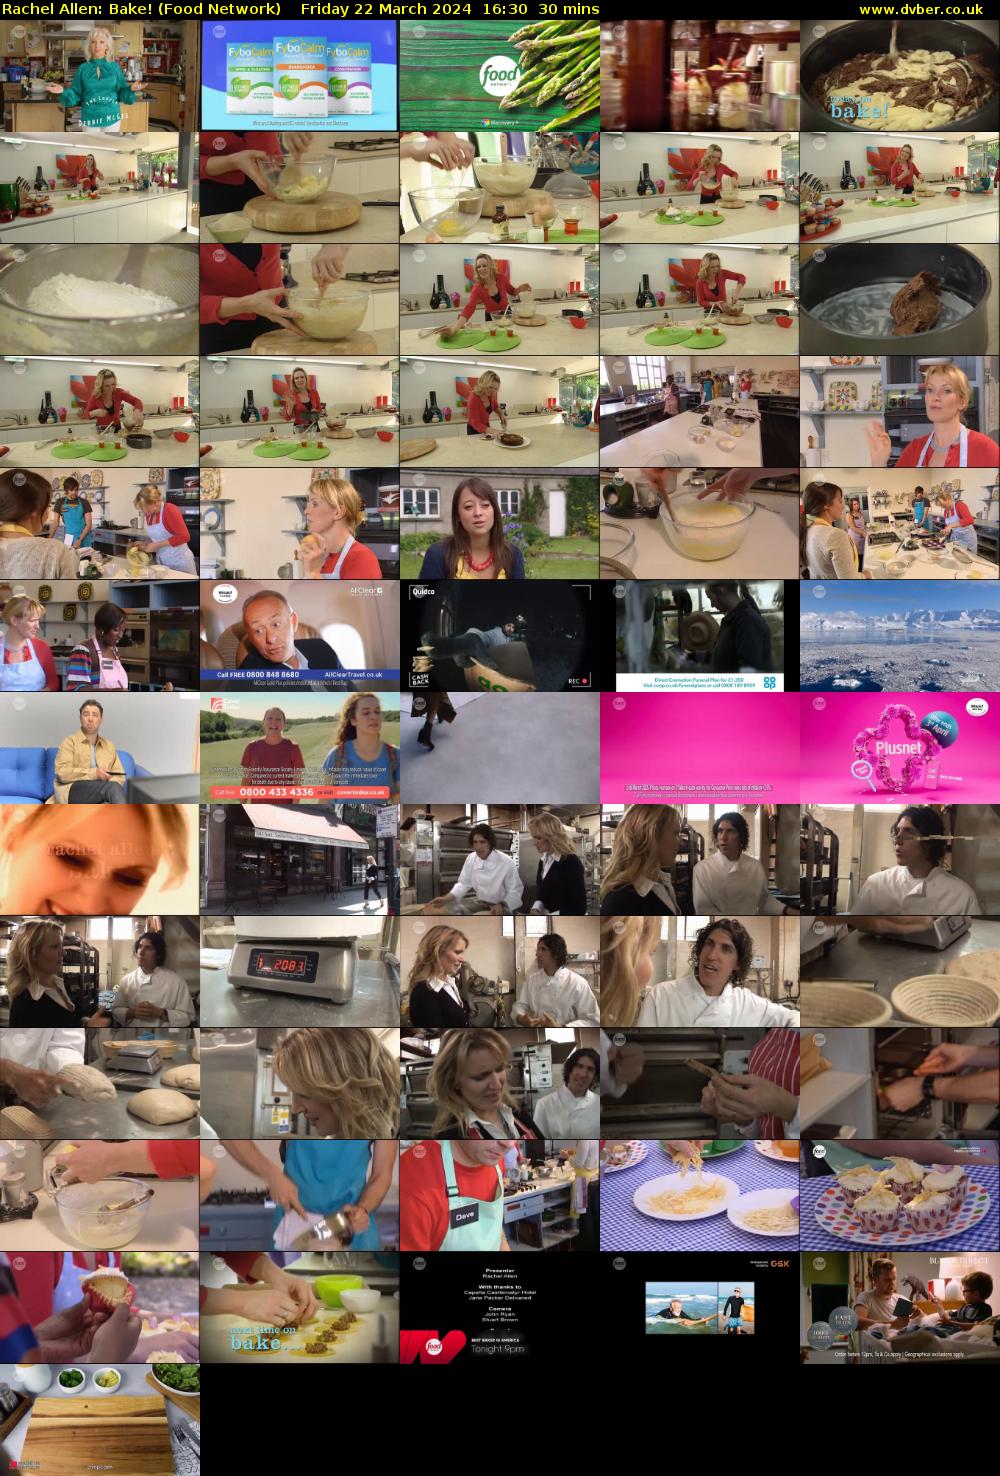 Rachel Allen: Bake! (Food Network) Friday 22 March 2024 16:30 - 17:00